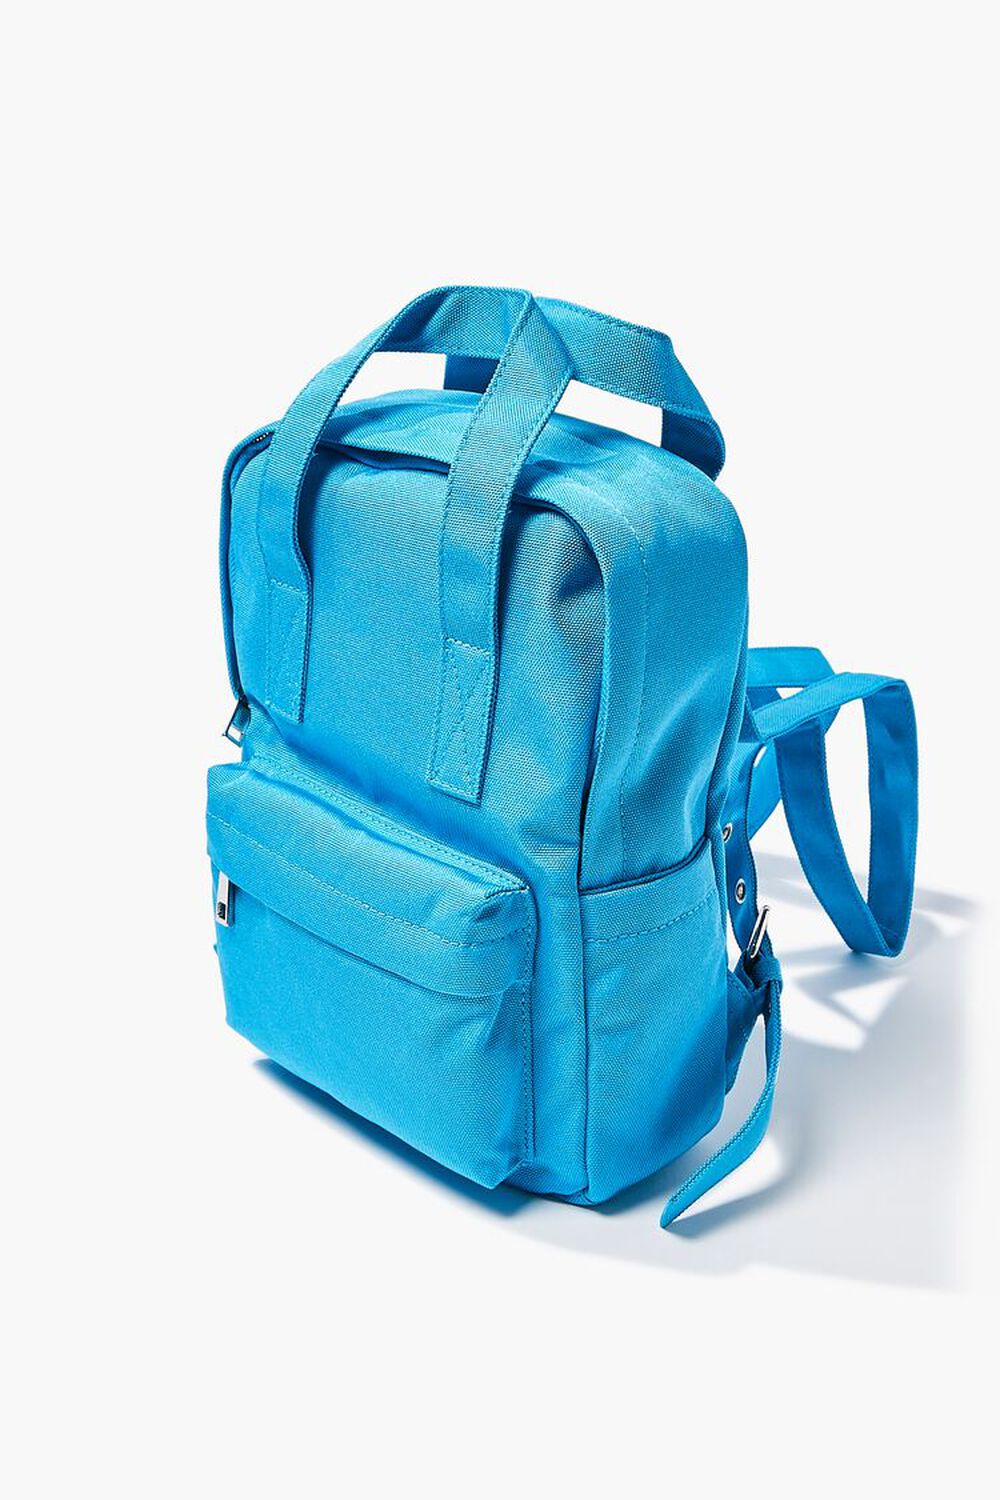 BLUE Dual-Strap Grommet Backpack, image 2